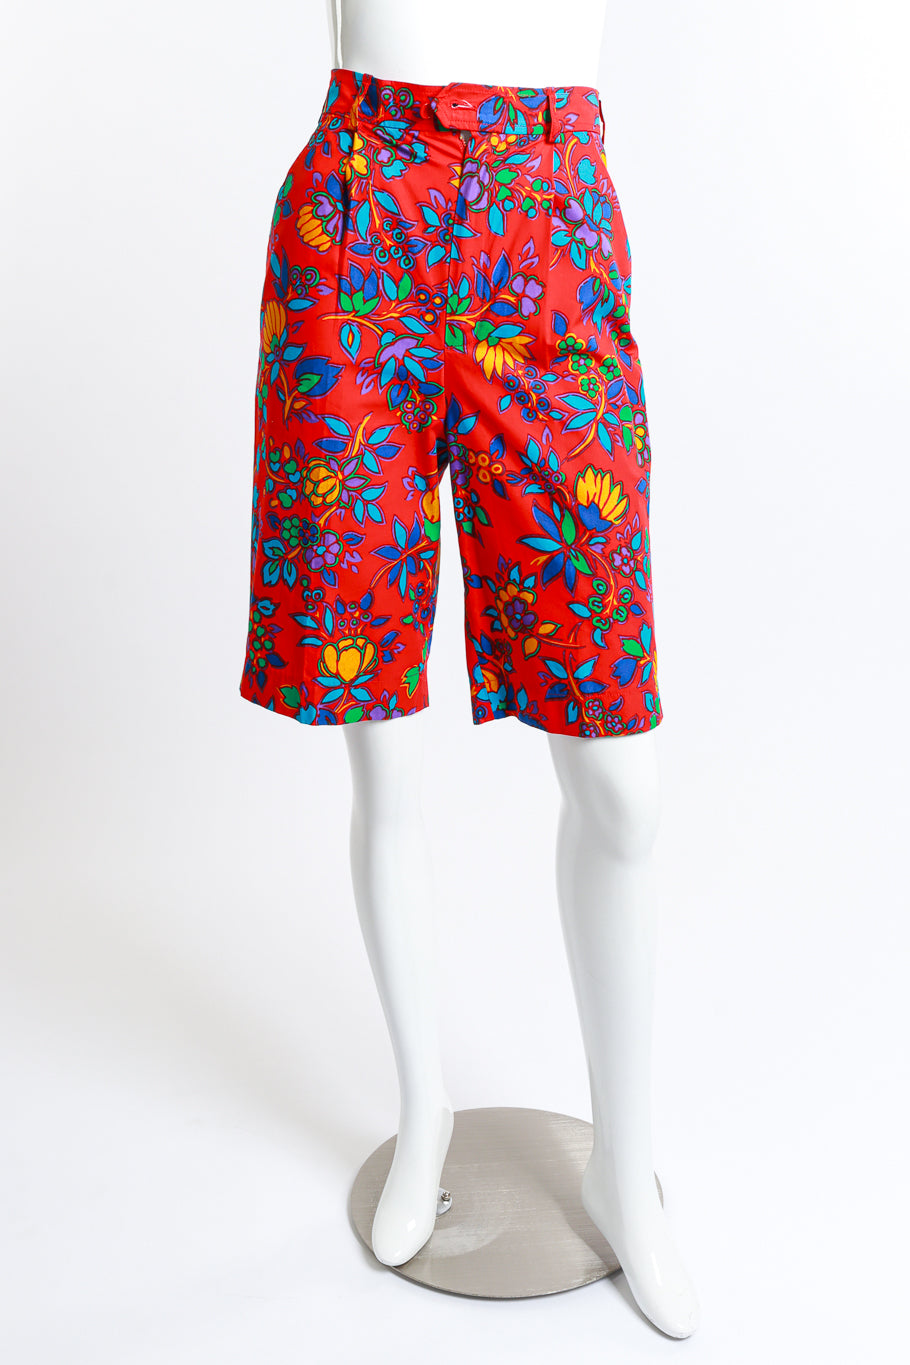 Tropical Bermuda Shorts by Yves Saint Lauren on mannequin @RECESS LA